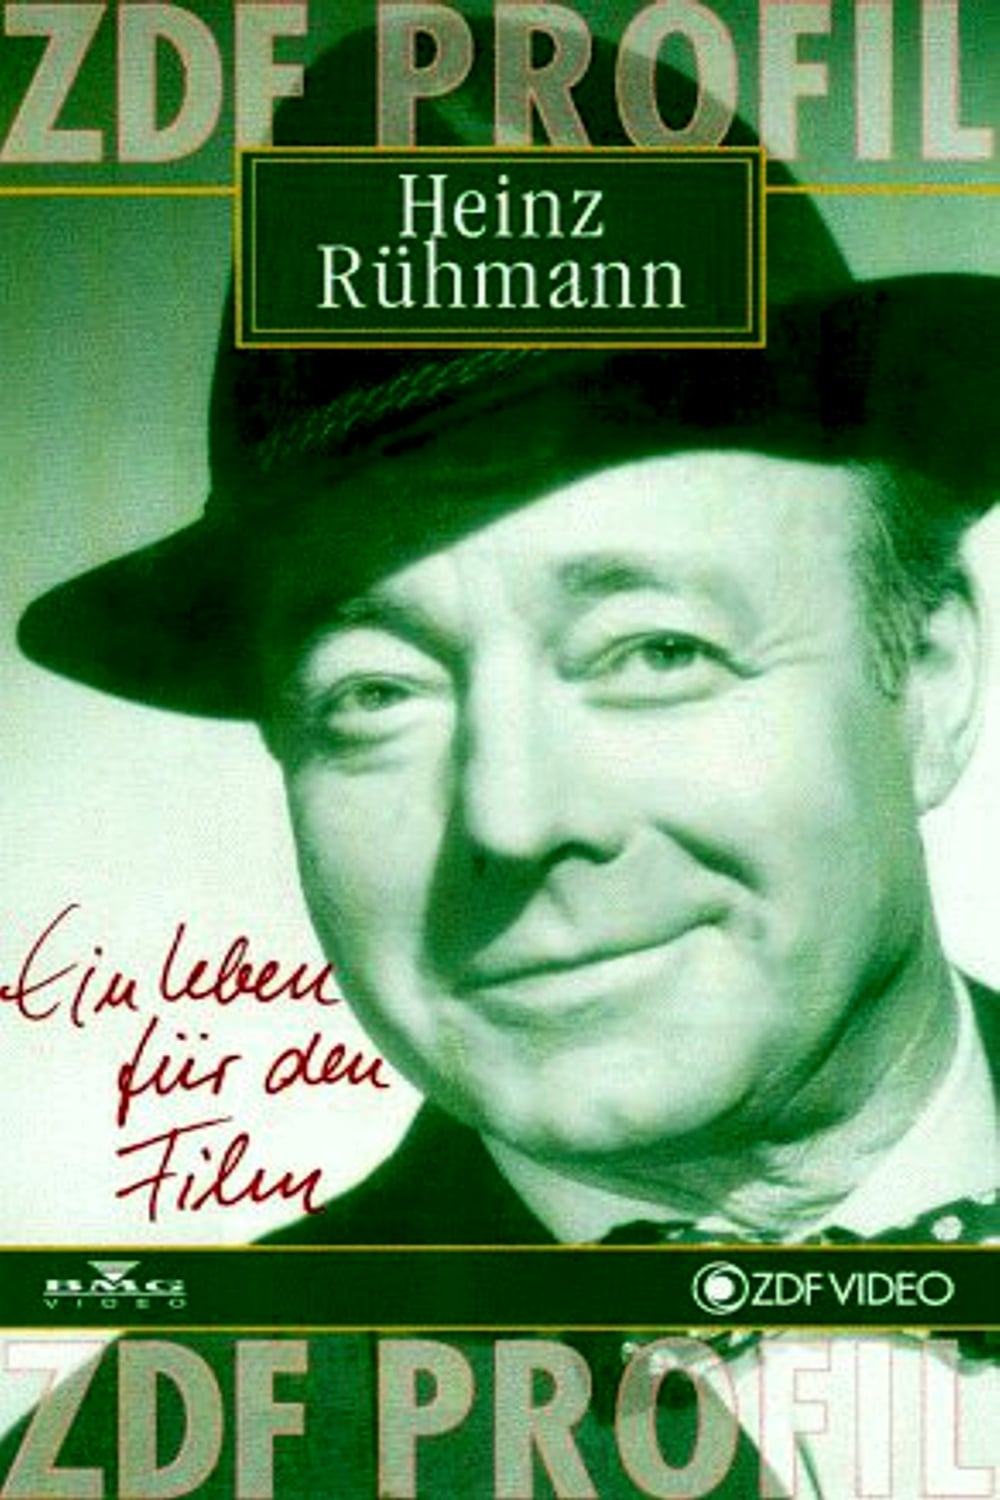 Heinz Rühmann - Schauspieler, Flieger, Mensch